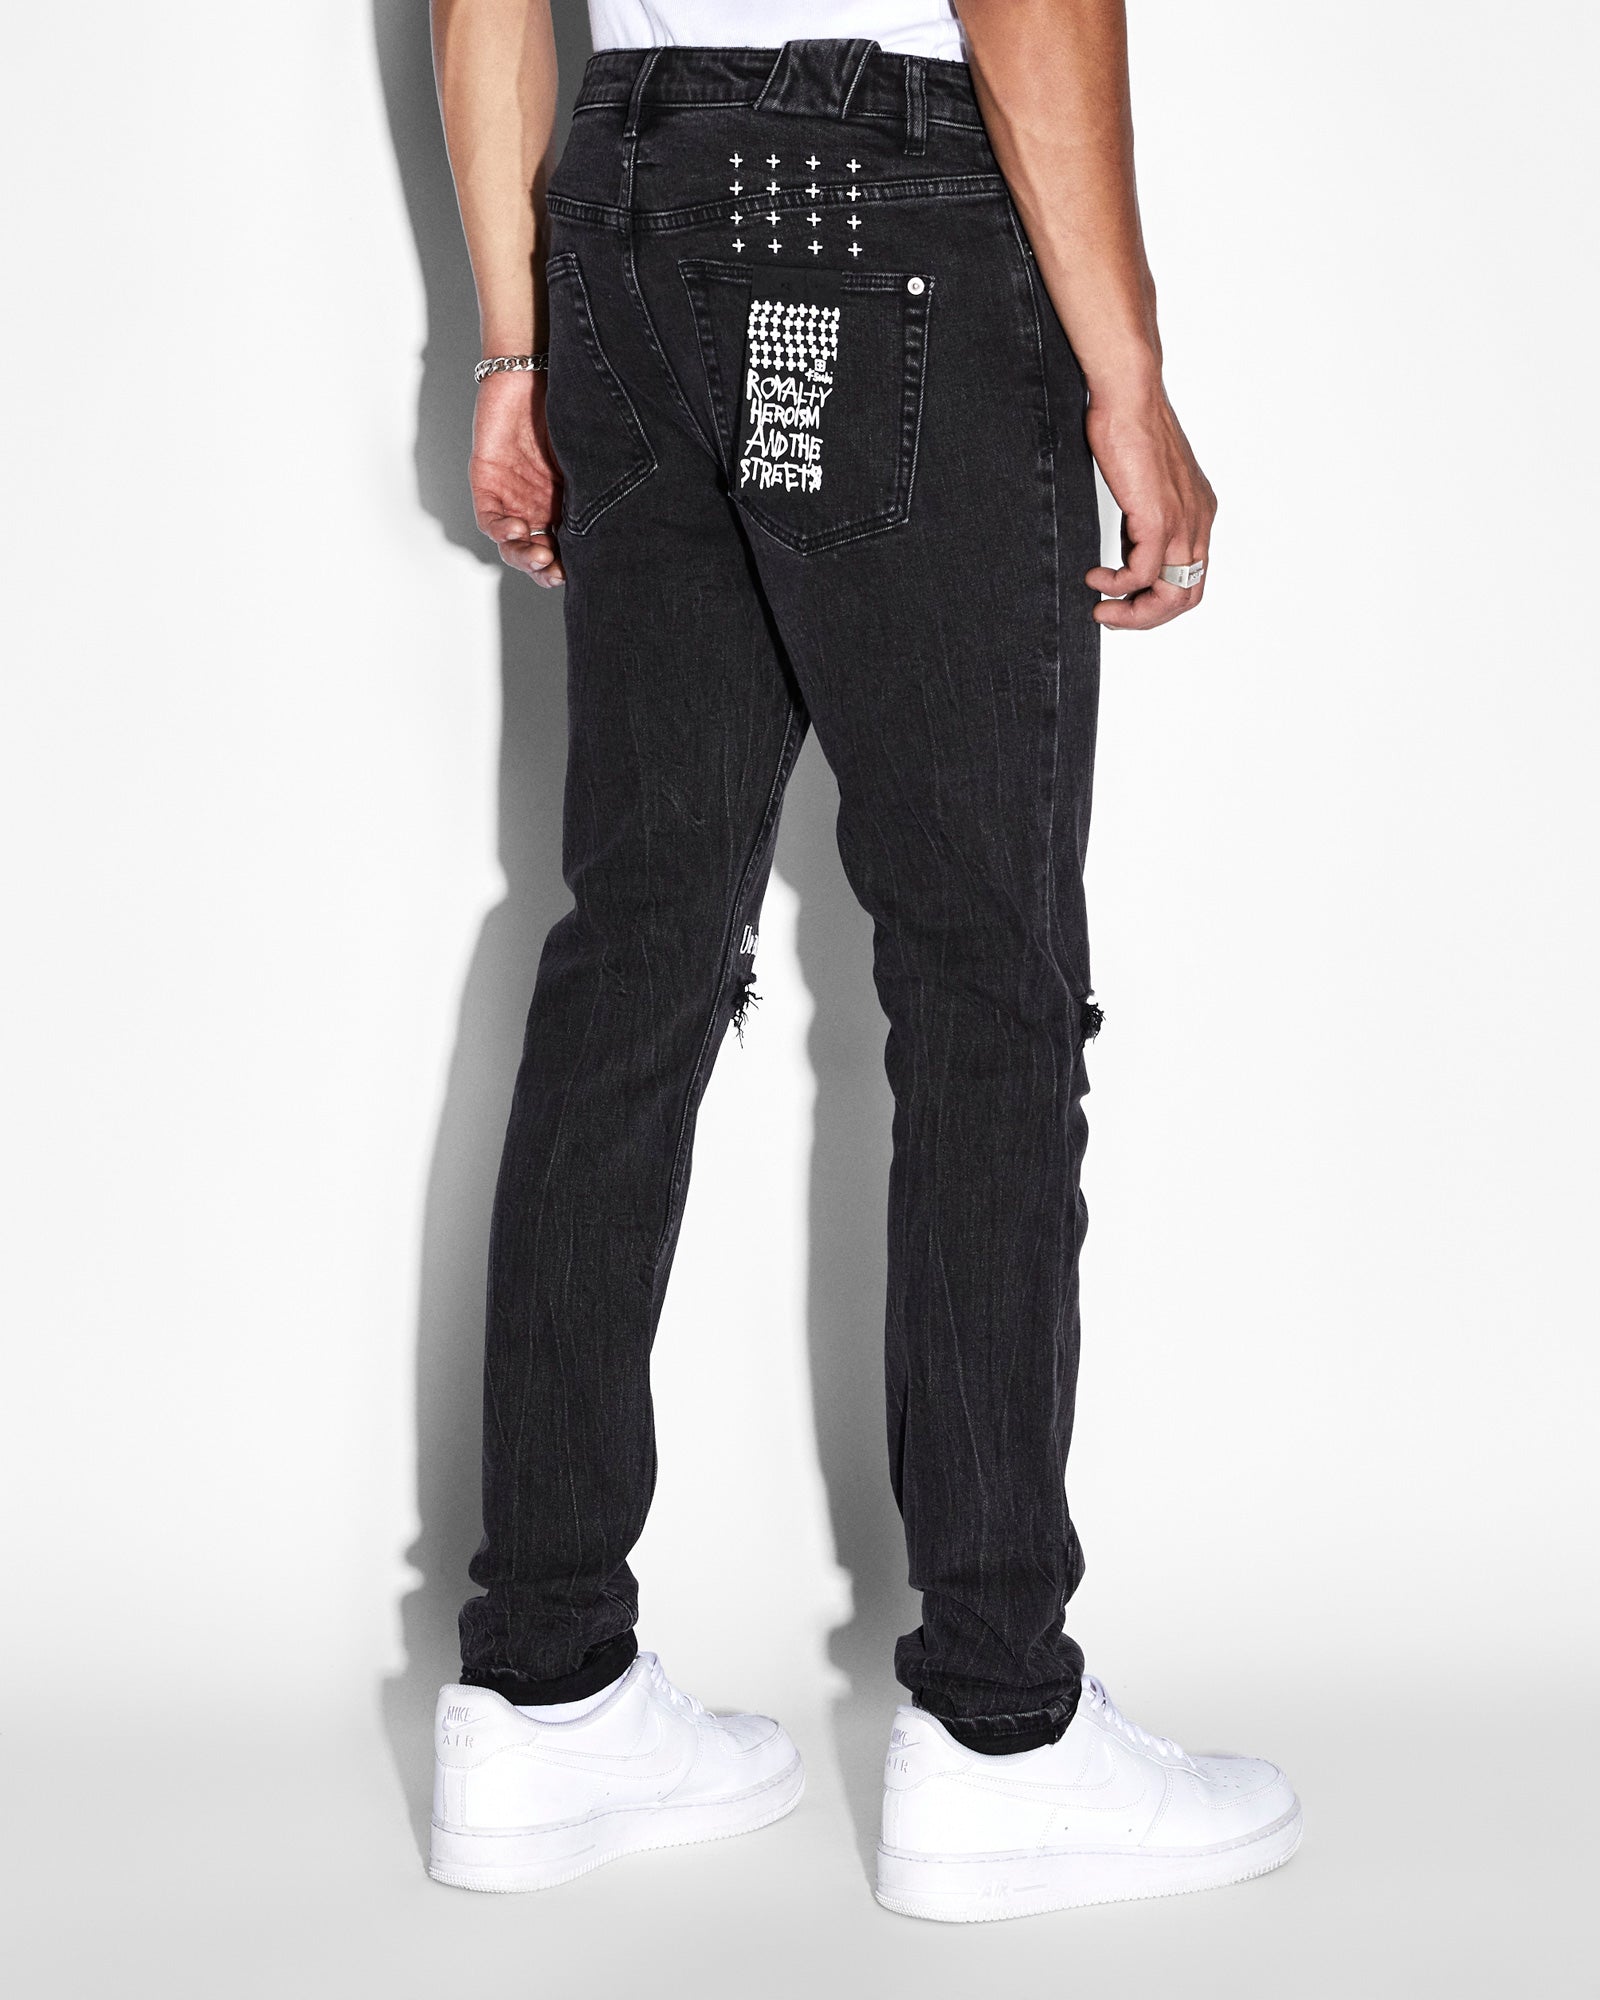 Louis Vuitton mens cotton cargo pants black bleach tie dye Size LV 46 US 36